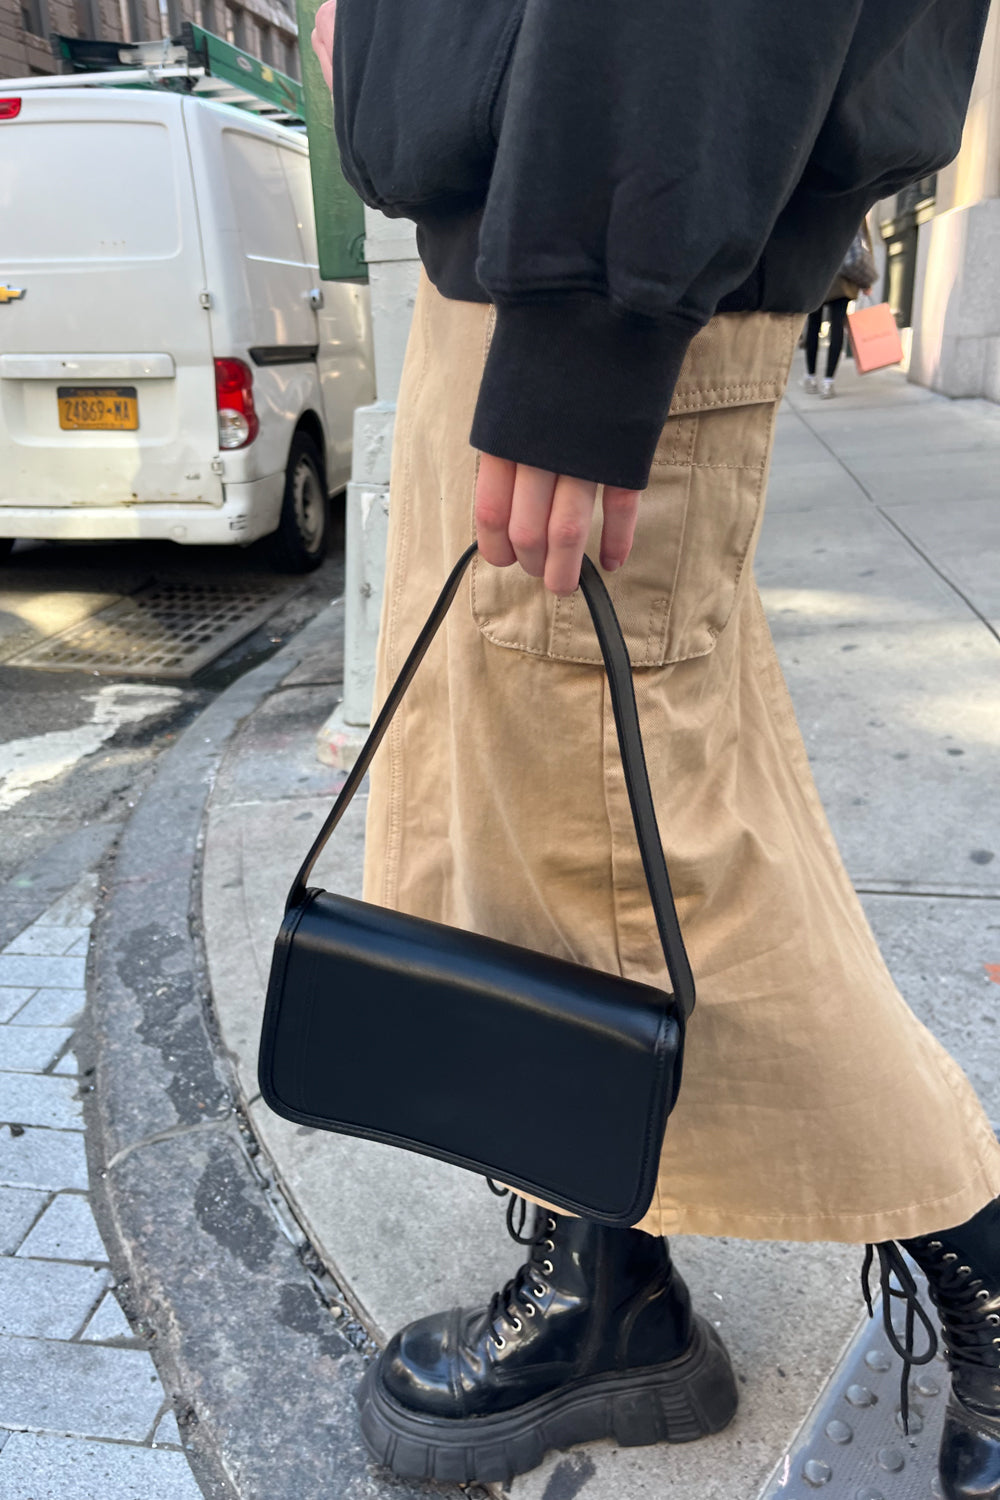 Black Chelsea Shoulder Bag